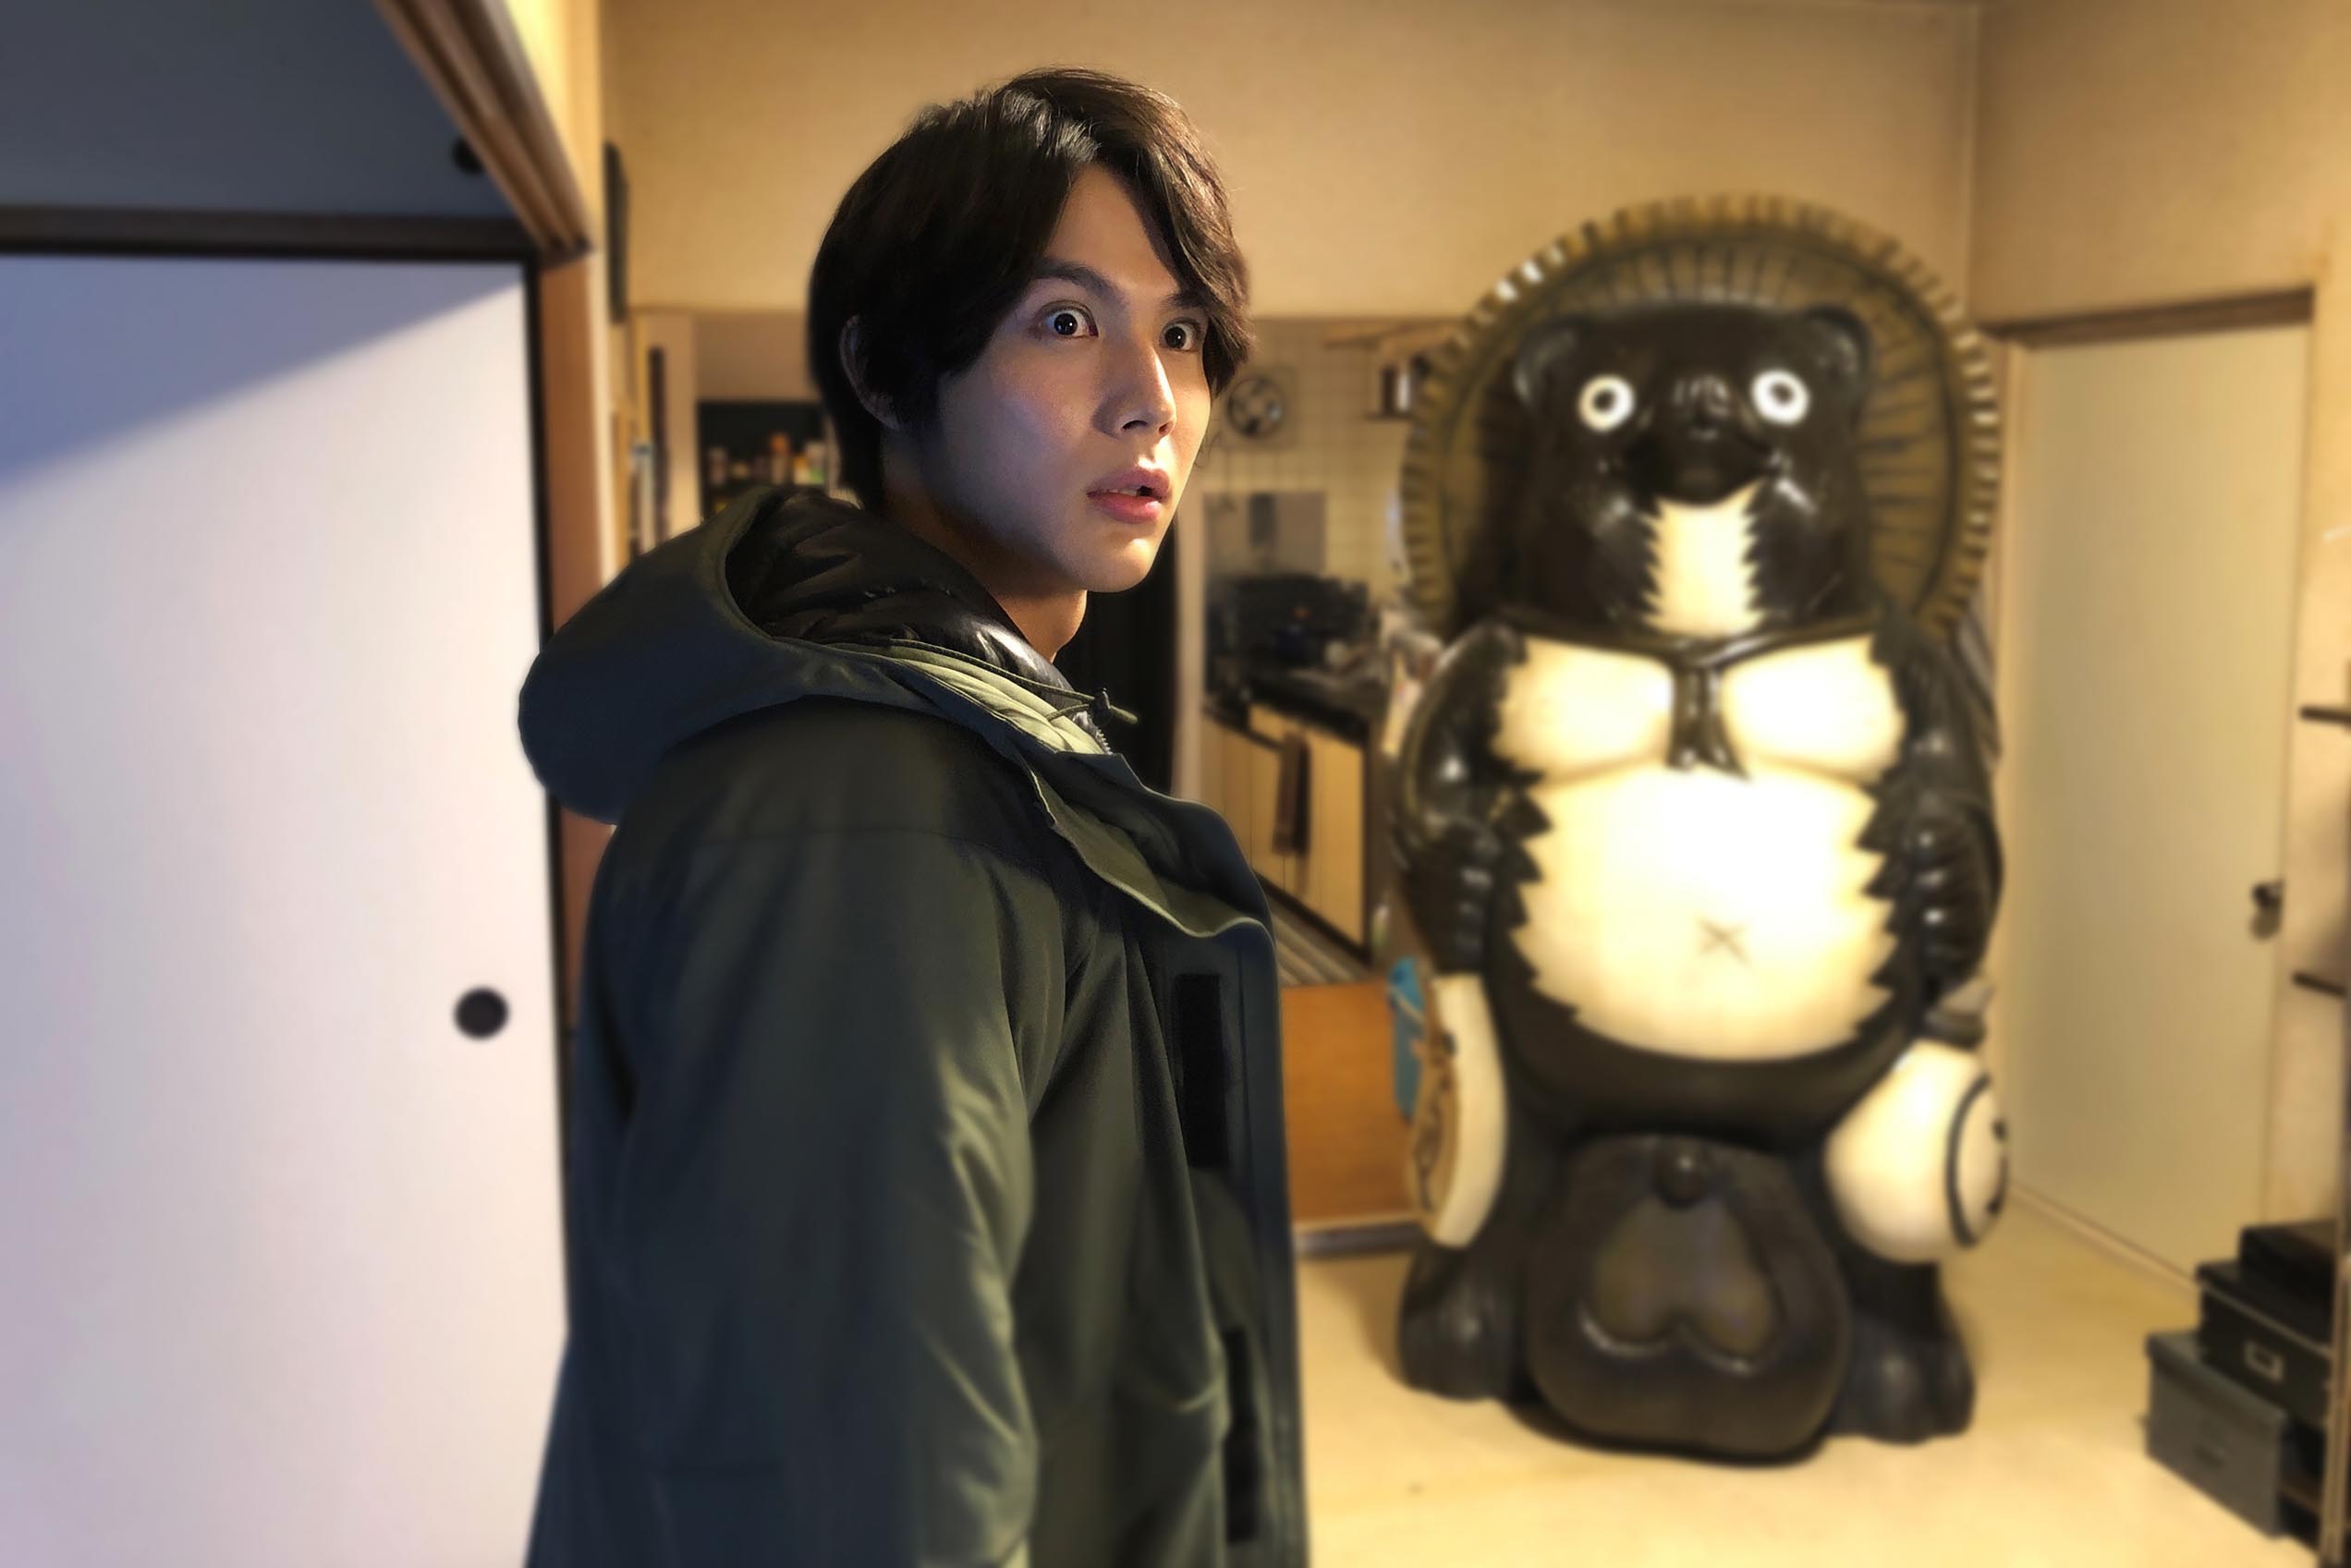 中川大志 ほん怖 スタッフによる超常現象ドラマで主演 怖い話が苦手な方も楽しんでもらえる内容 Oricon News